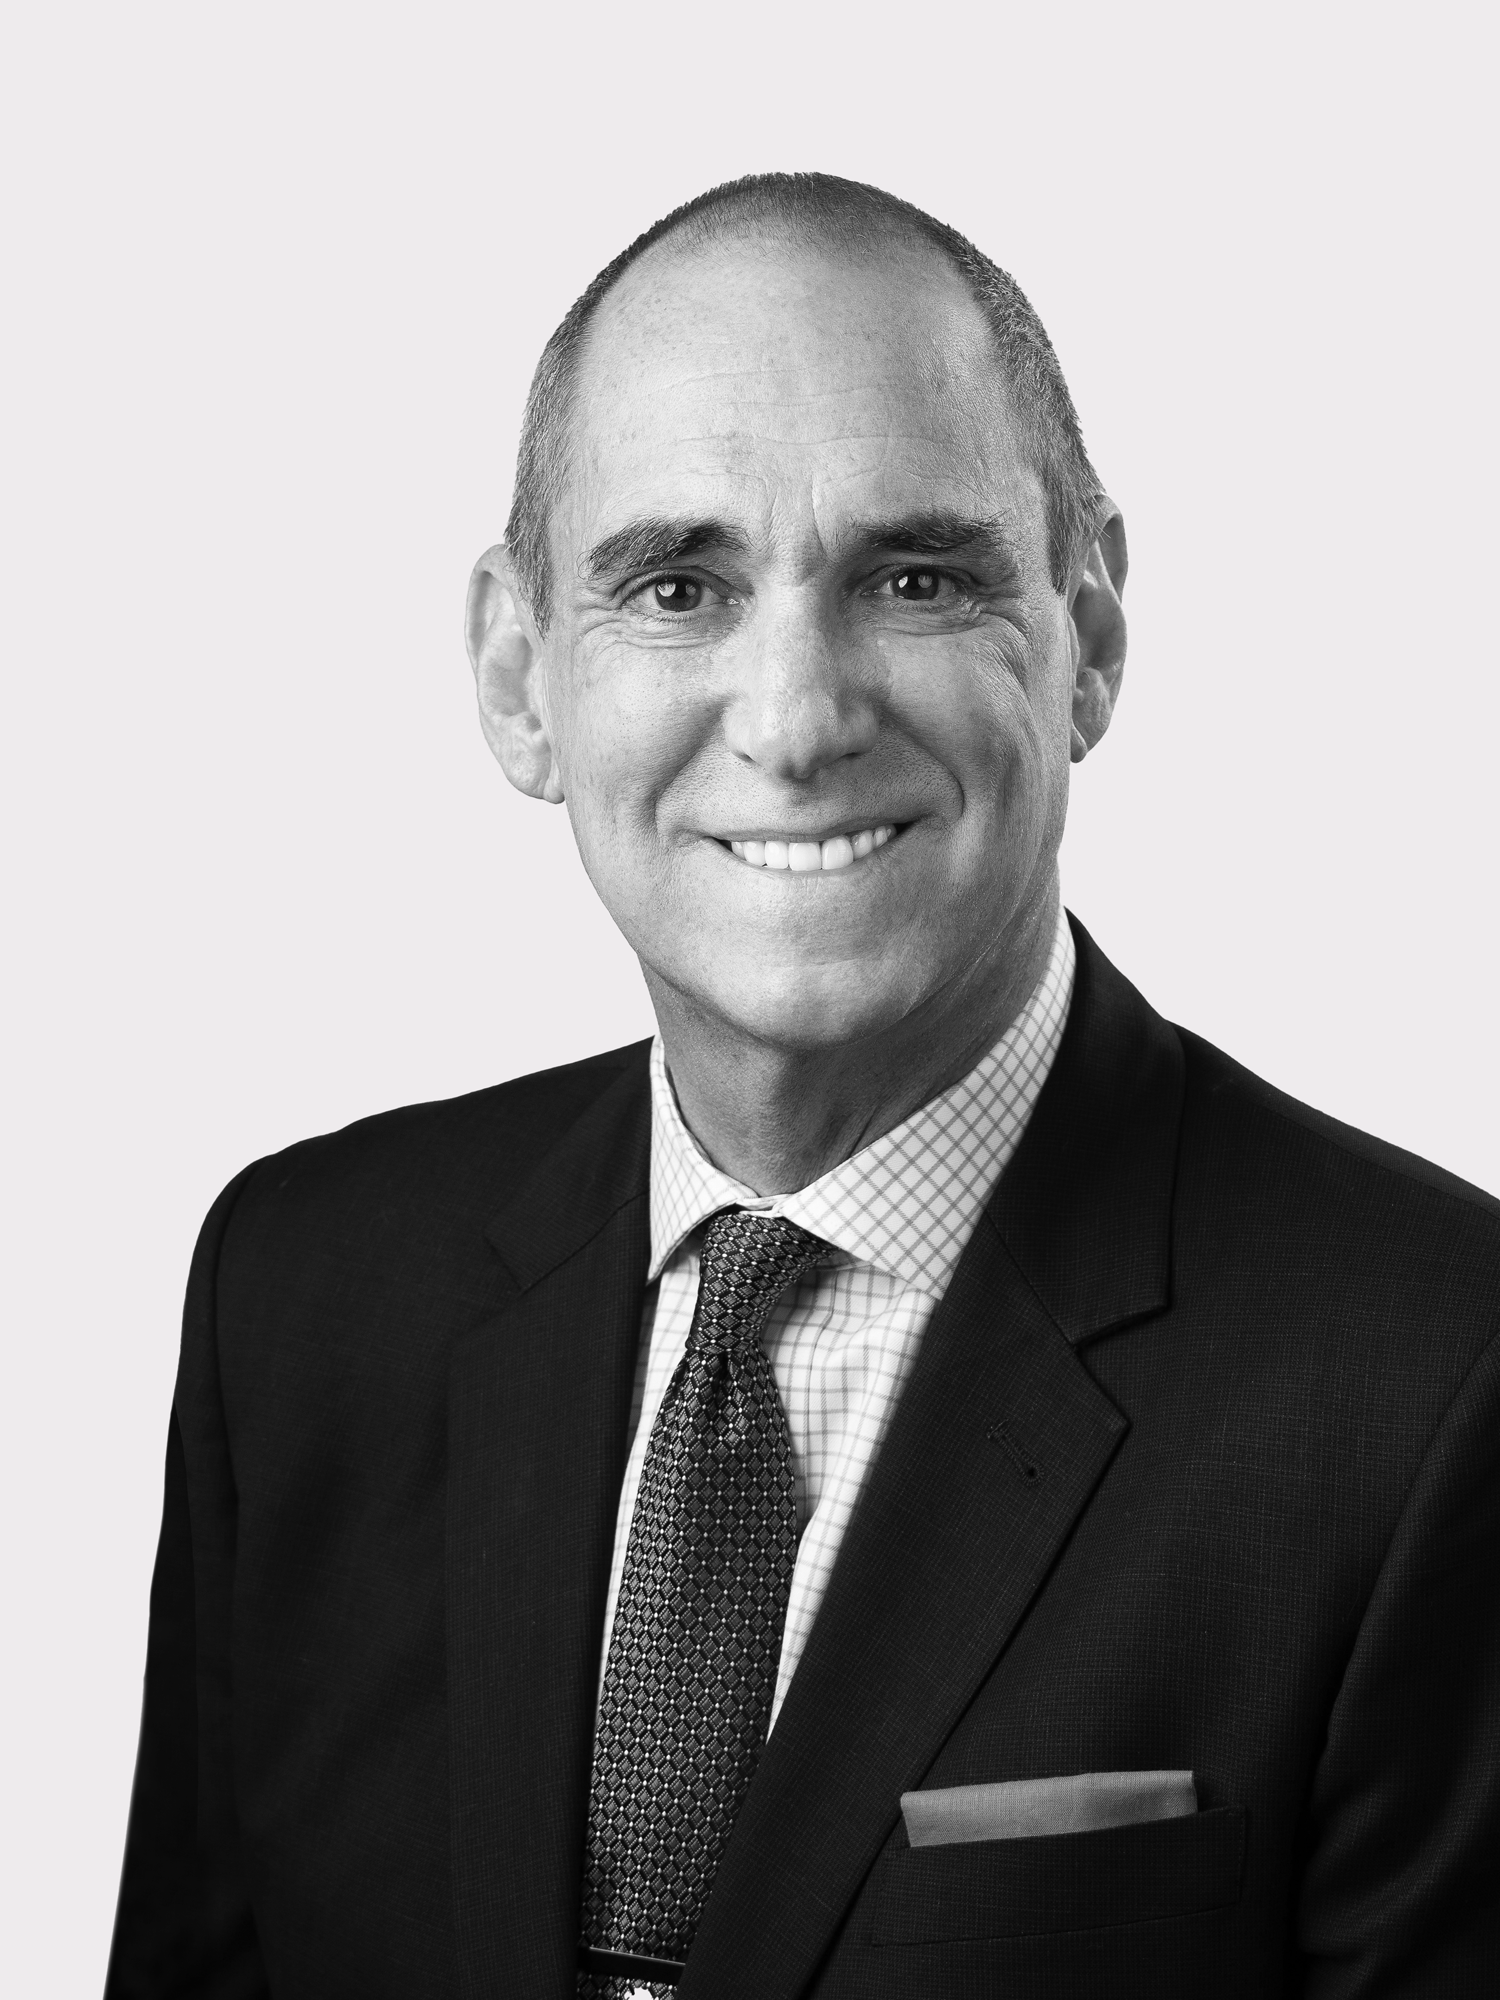 Matthew Gardner - Chief Economist for Windermere Real Estate